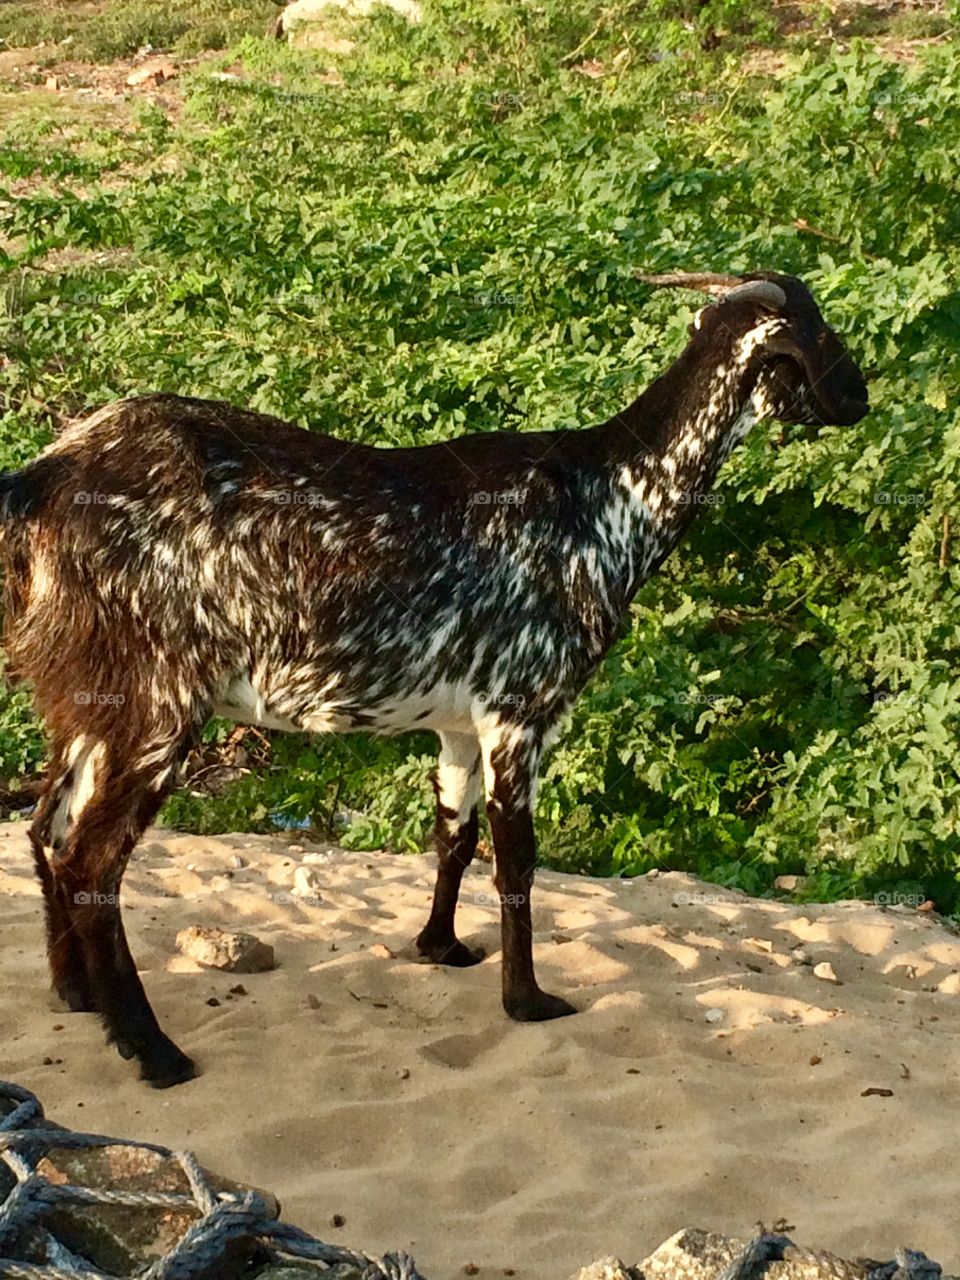 Goat on the beach